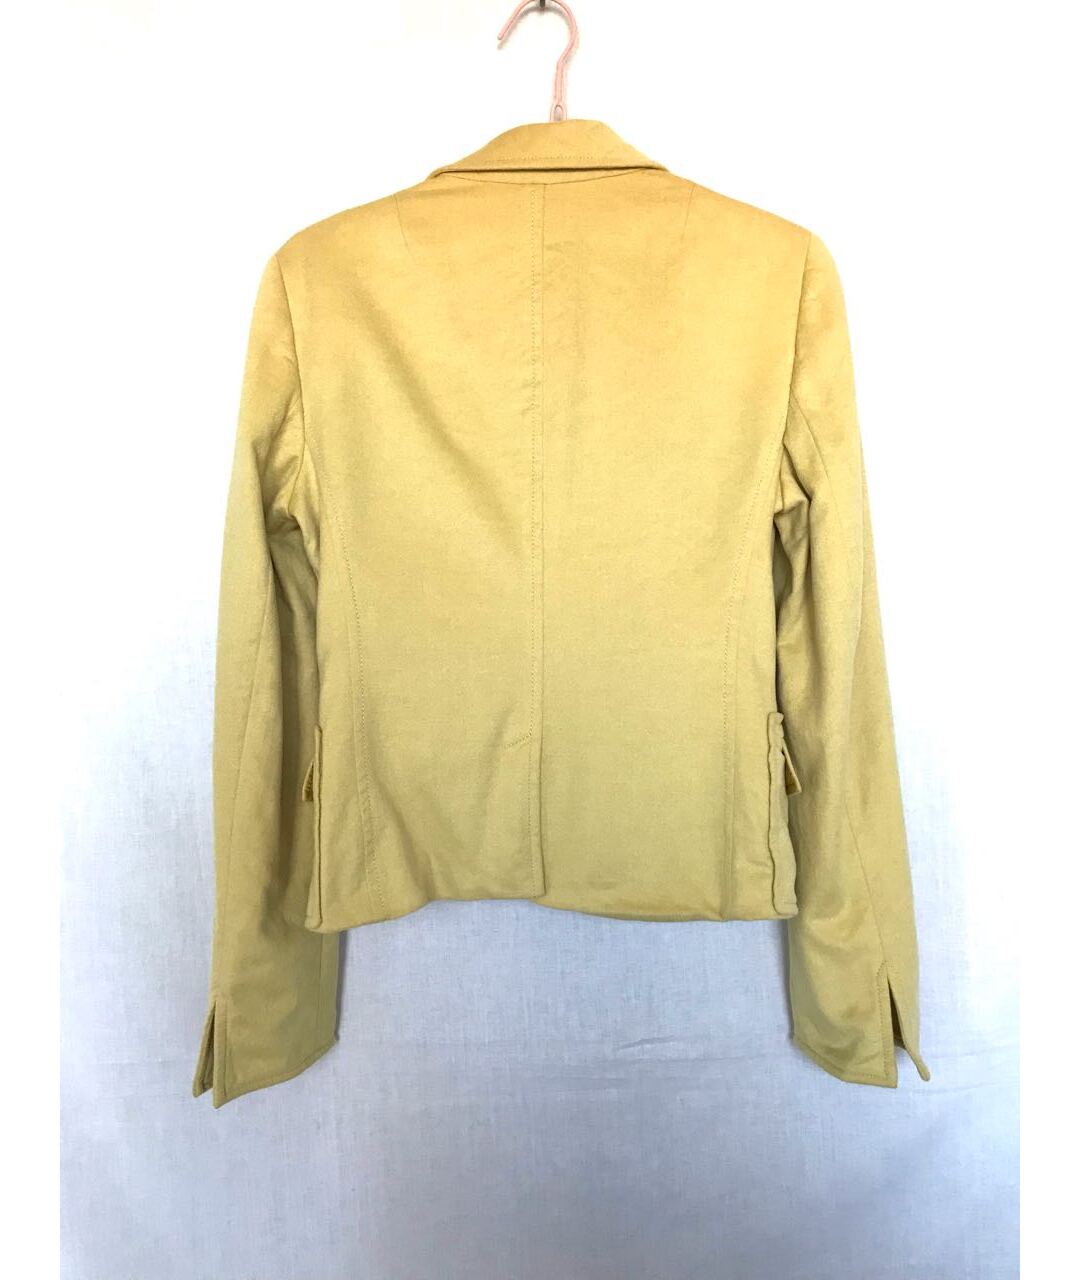 AKRIS PUNTO Желтый шерстяной жакет/пиджак, фото 3